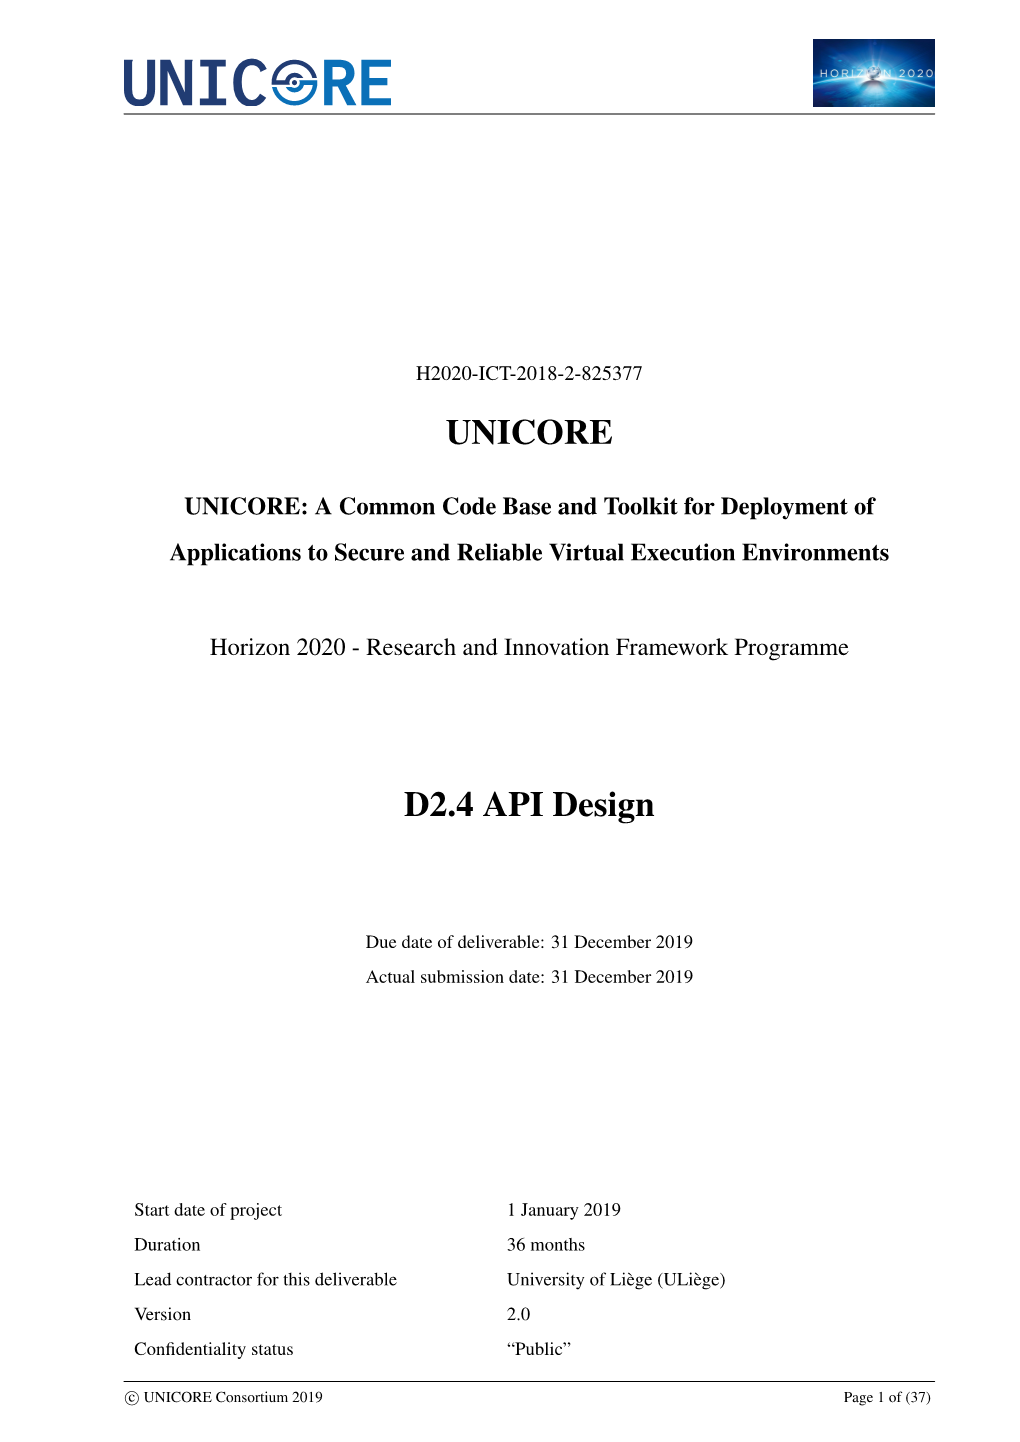 UNICORE D2.4 API Design